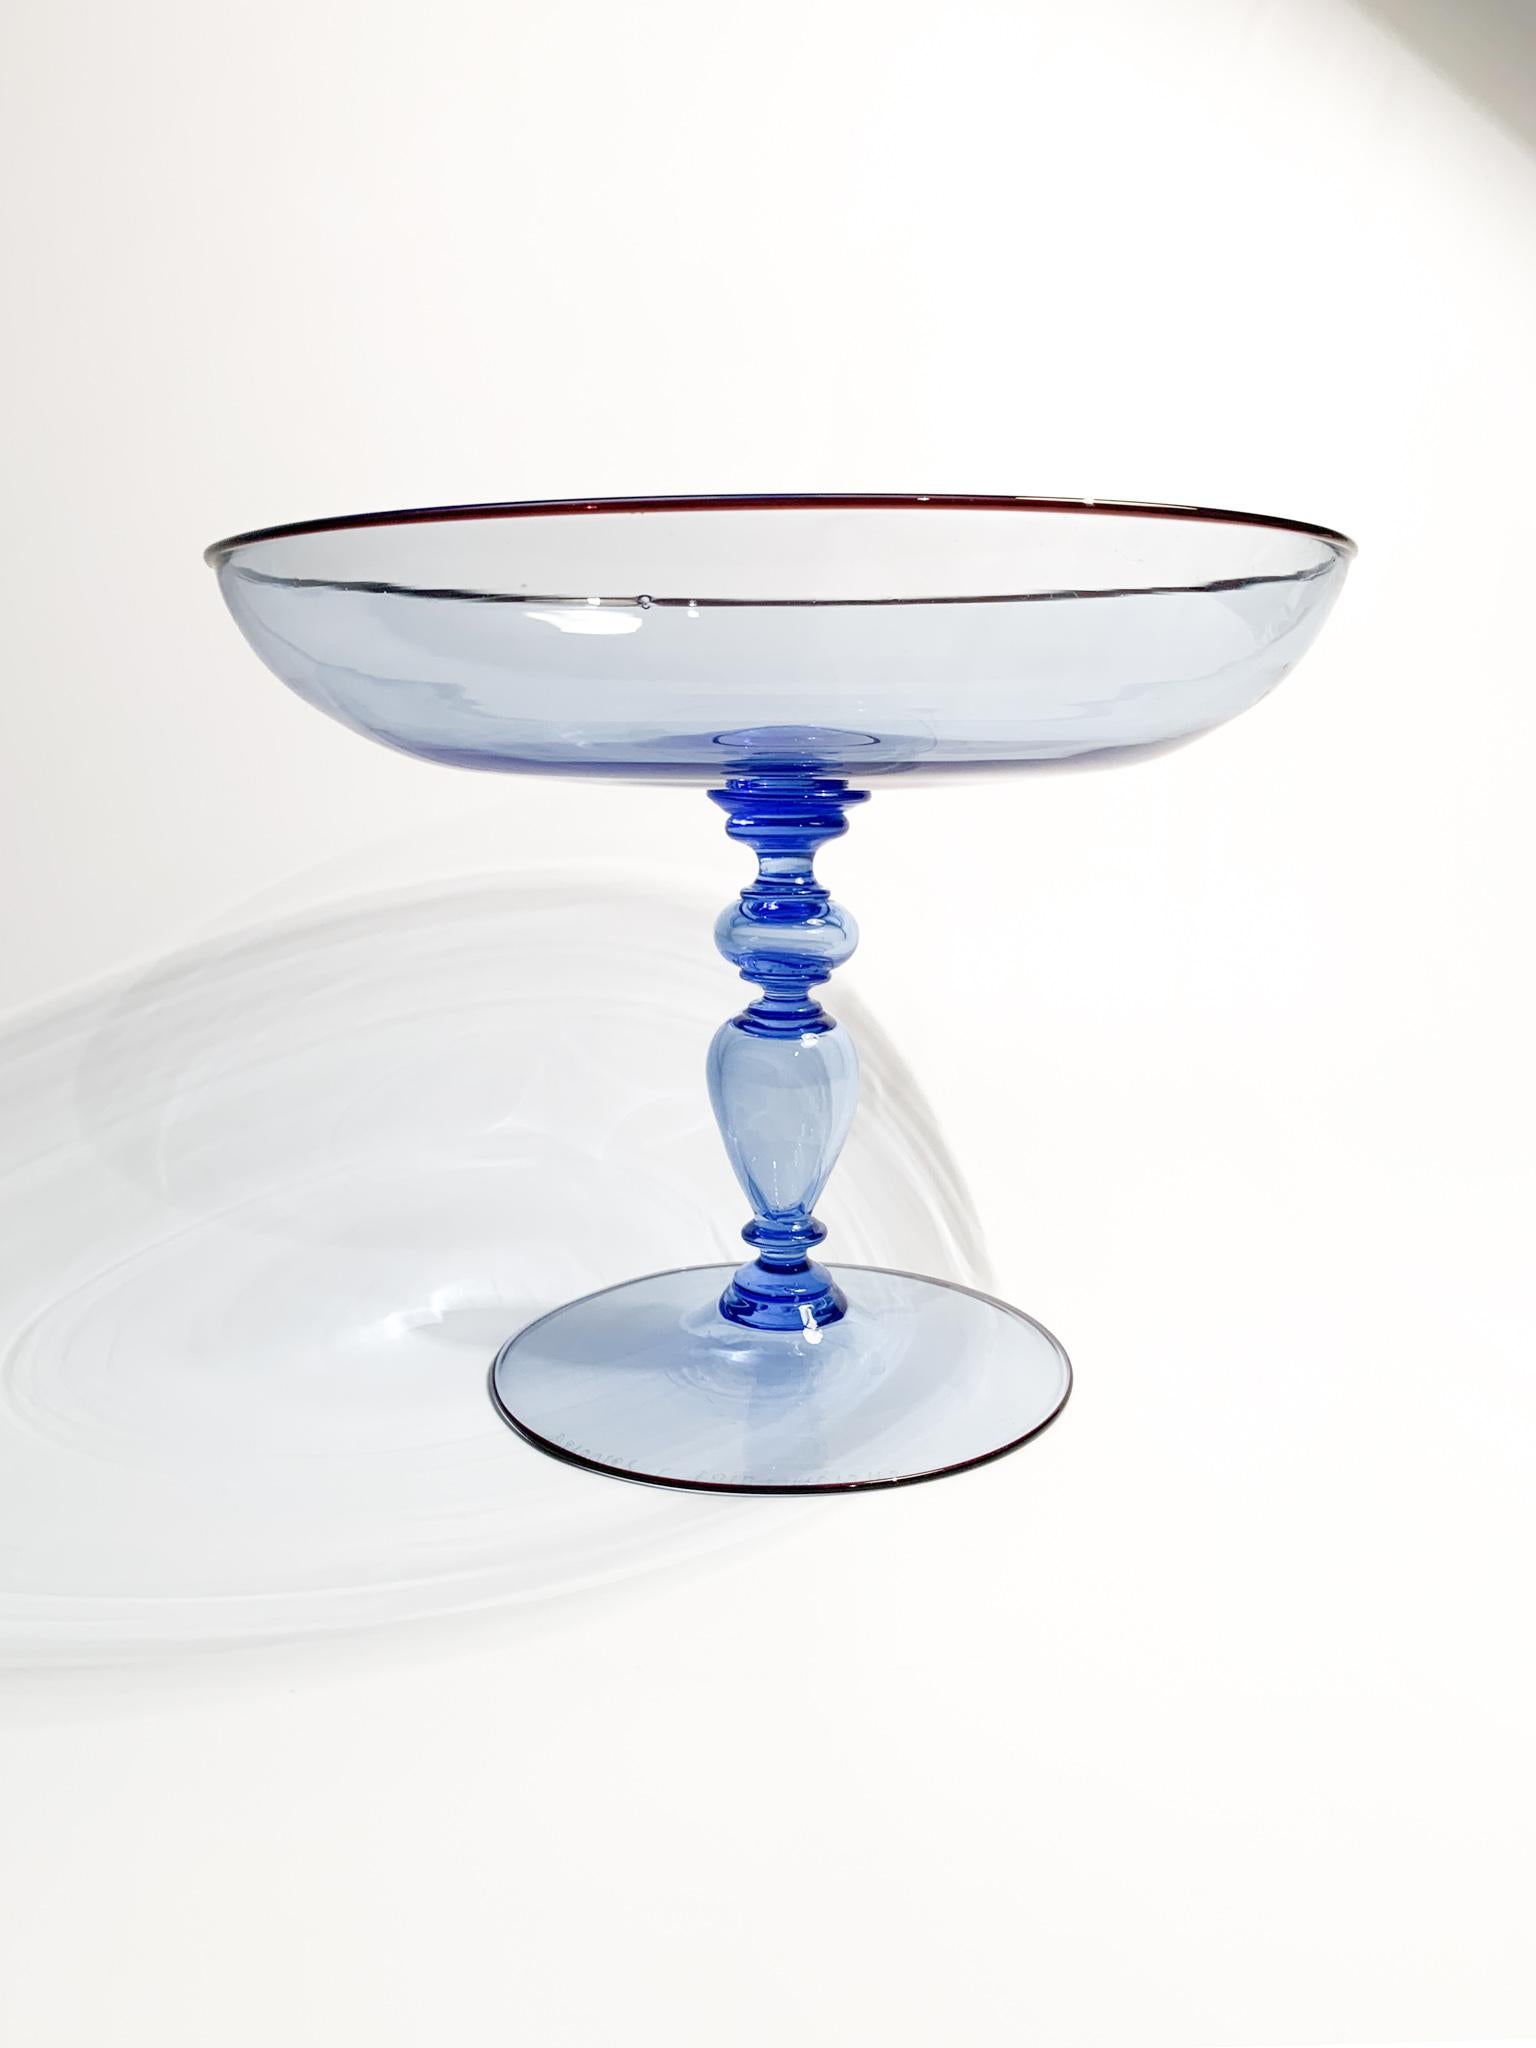 Coupe centre de table en verre de Murano bleu très fin, réalisée en s'inspirant de la coupe Caravaggio de Barovier&Toso, dans les années 1980.

Ø 22 cm h 17 cm

Barovier&Toso est une verrerie, connue pour ses collections artisanales de verre